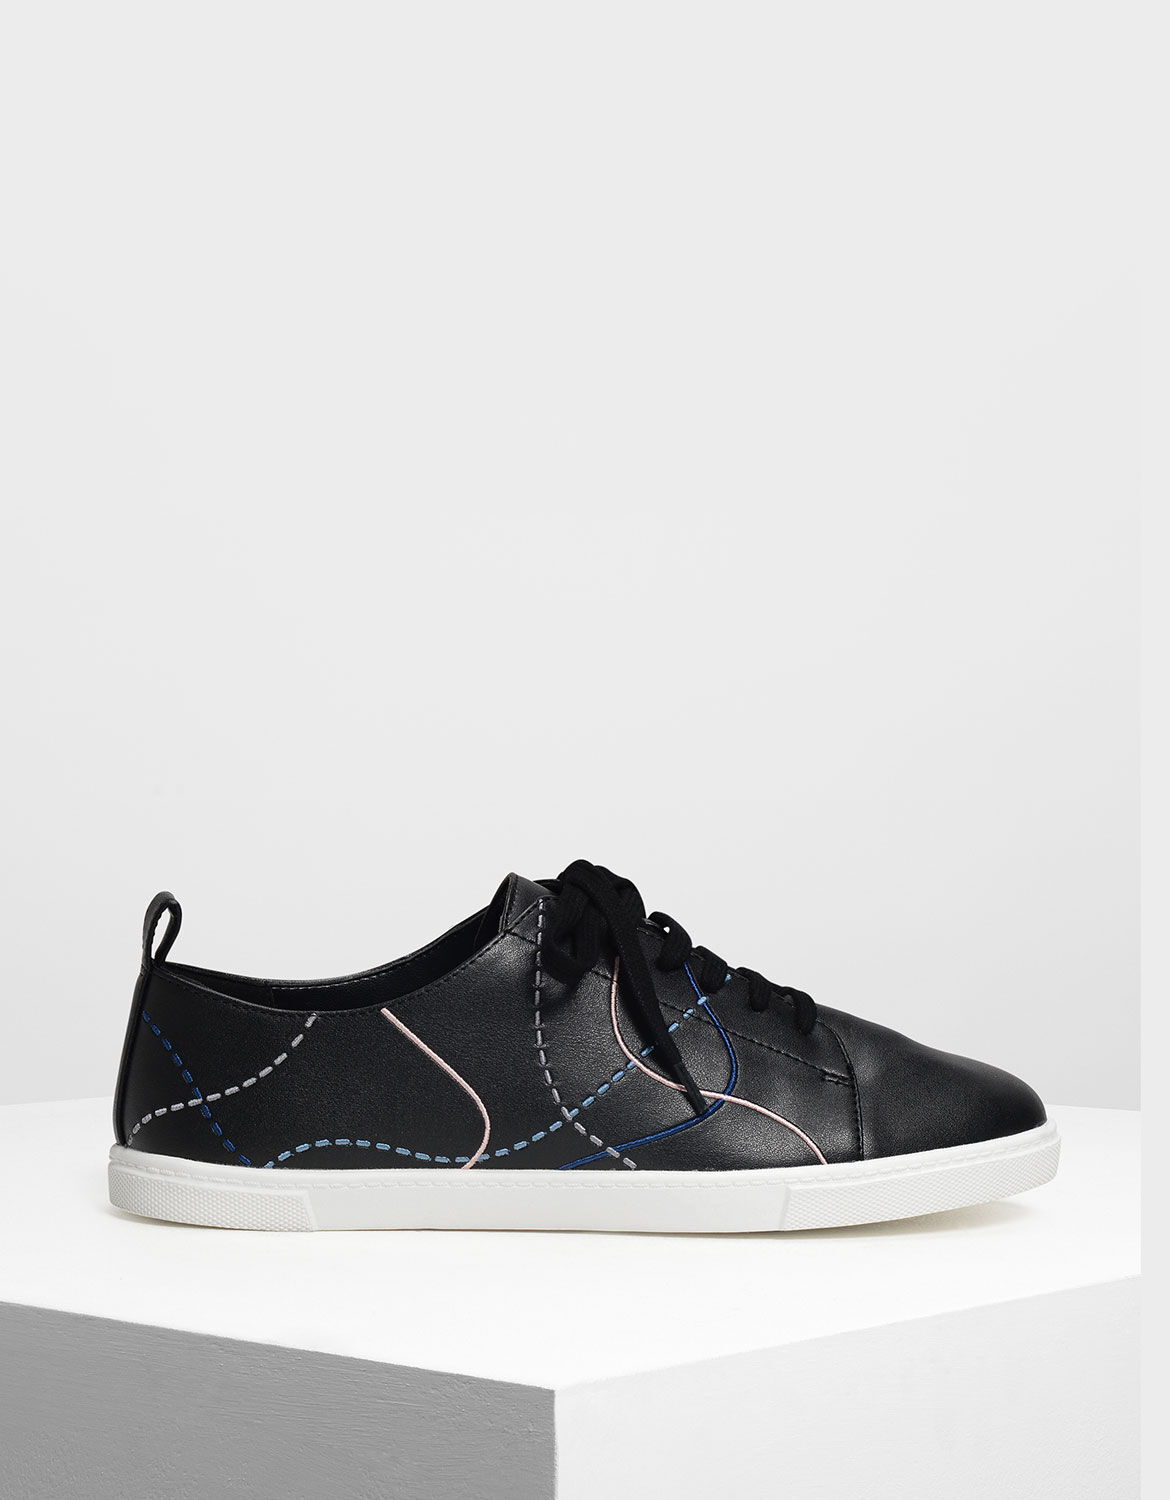 Line Detail Sneakers | CHARLES \u0026 KEITH SG